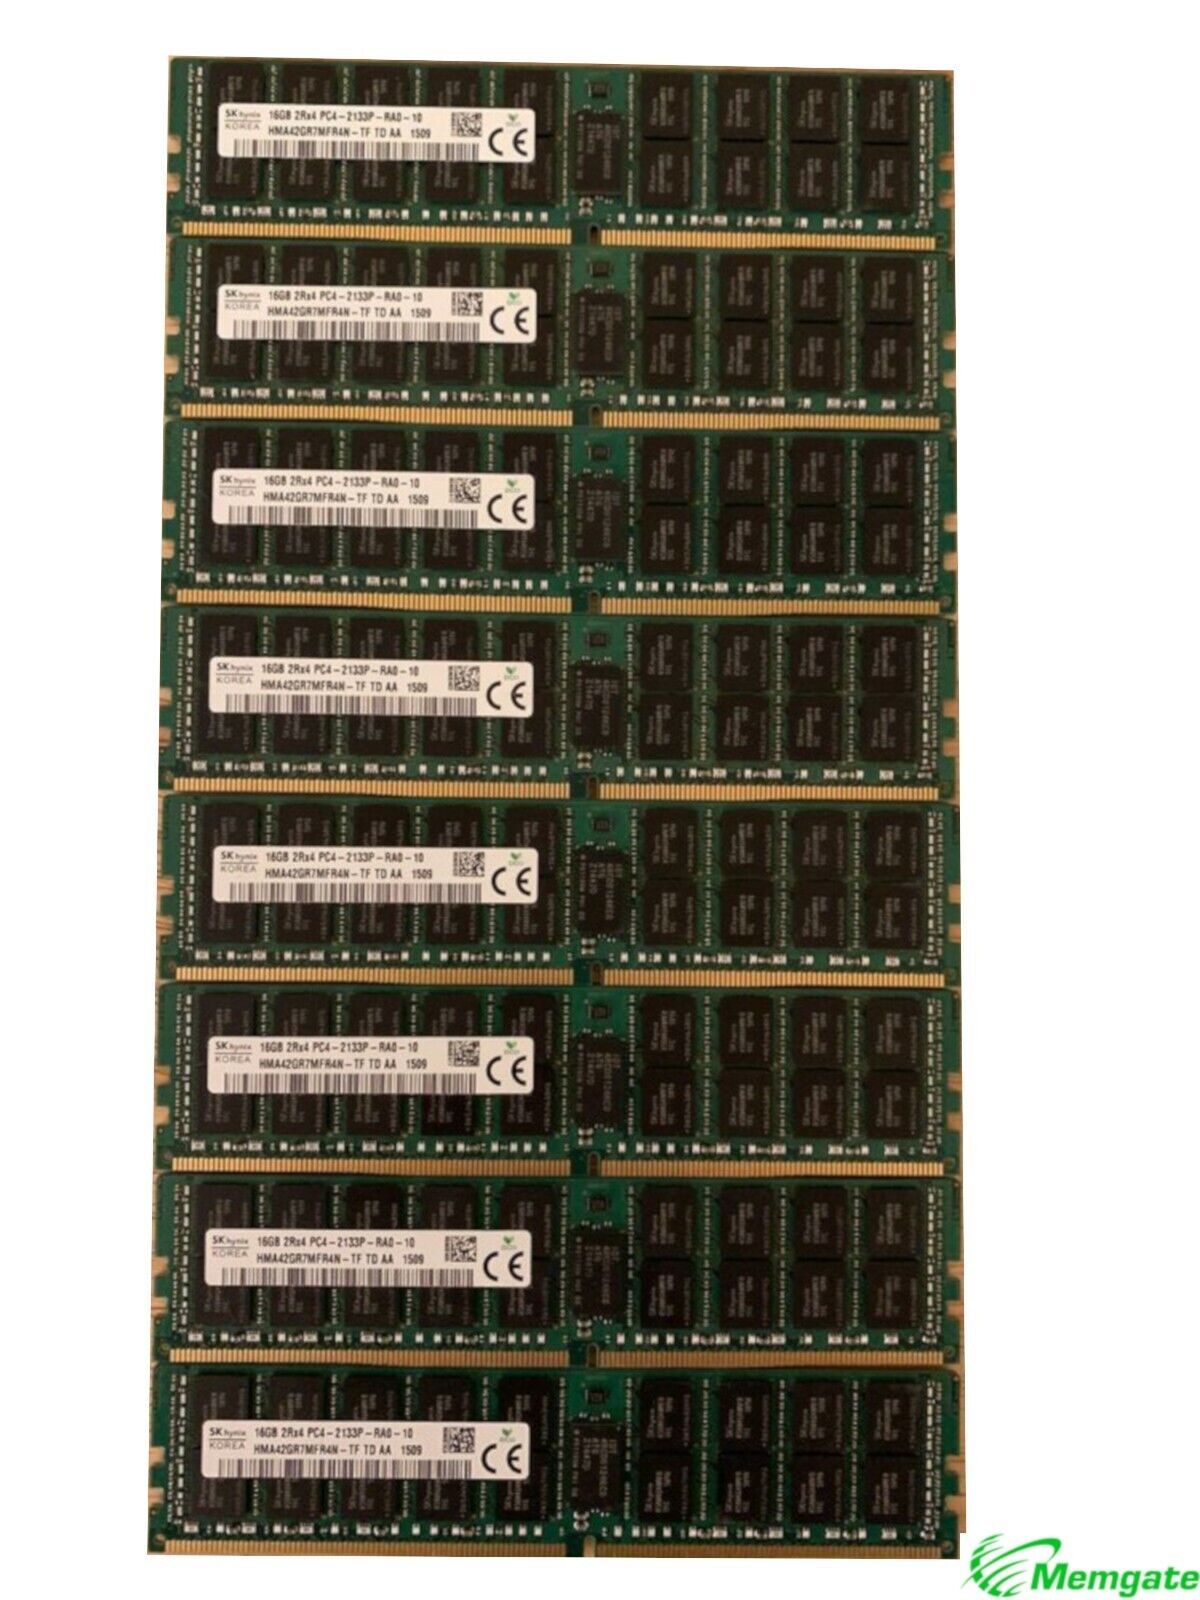 128GB (8x16GB) PC4-17000P-R DDR4 2133P ECC RDIMM Memory for Dell PowerEdge R630